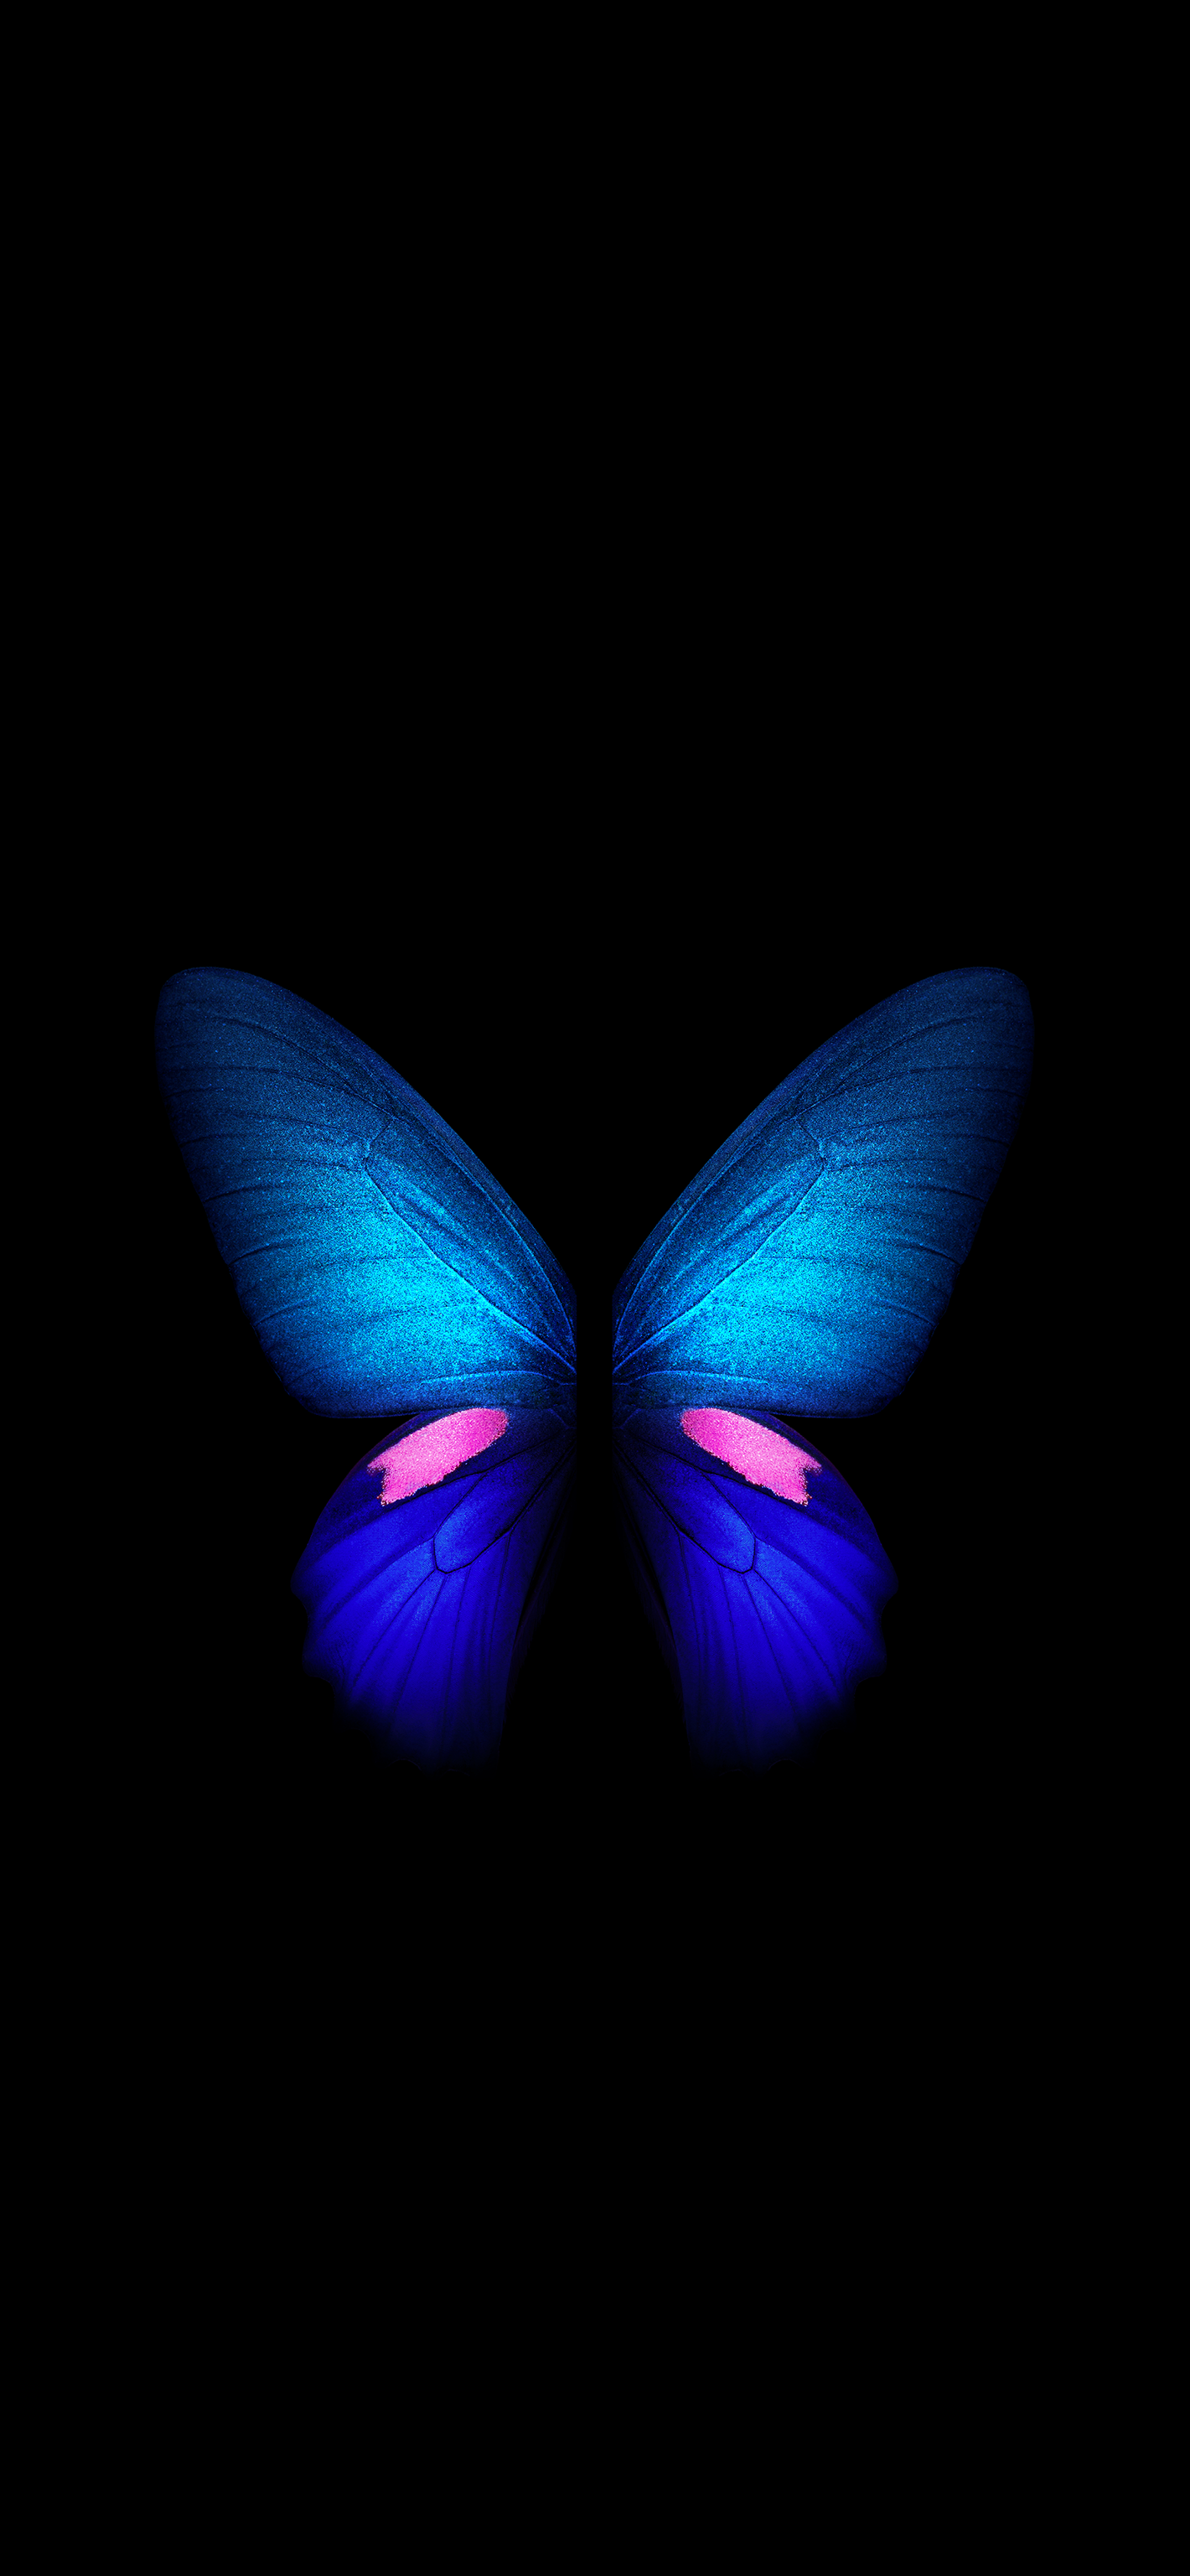 Blue Robot & Butterflies Live Wallpaper - free download